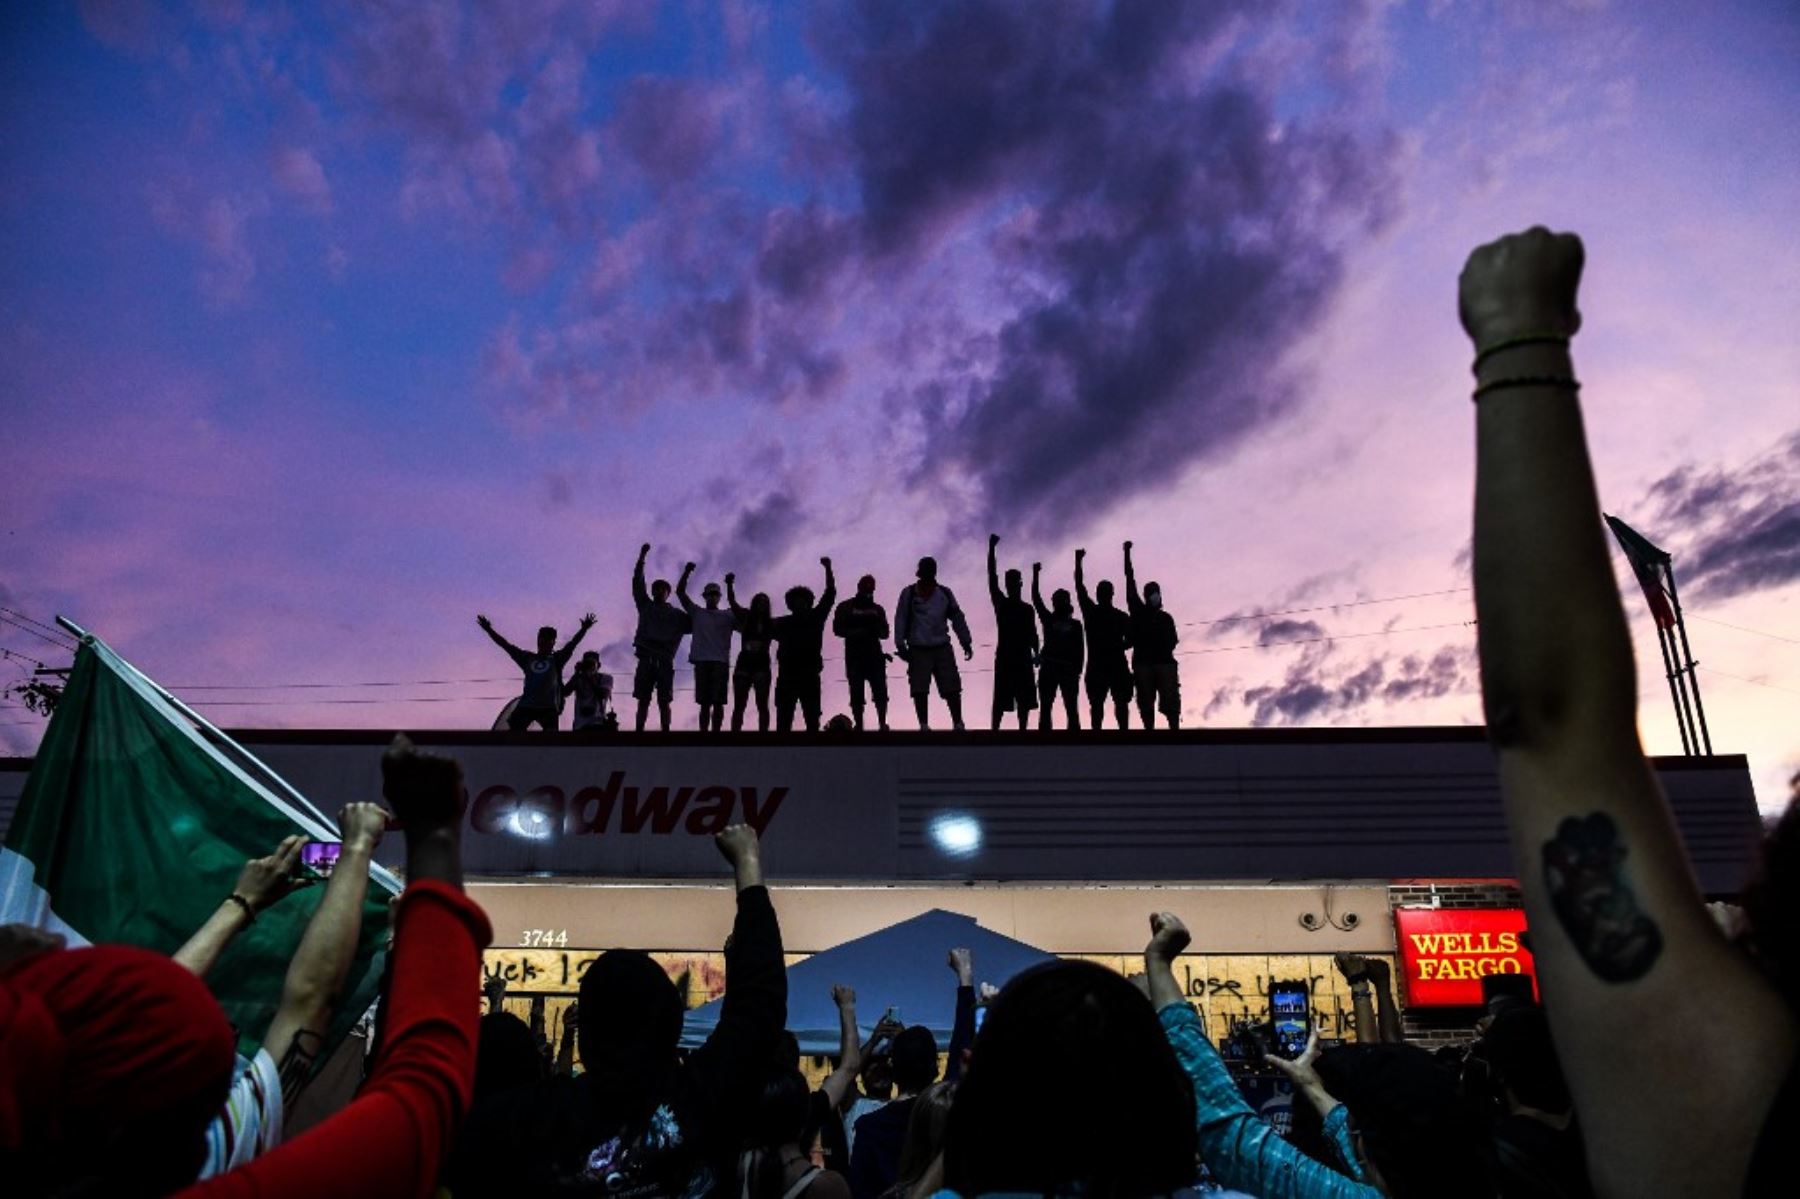 Los ciudadanos levantan las manos y gritan consignas mientras protestan en el improvisado monumento conmemorativo en honor de George Floyd, en Minneapolis, Minnesota. Foto: AFP